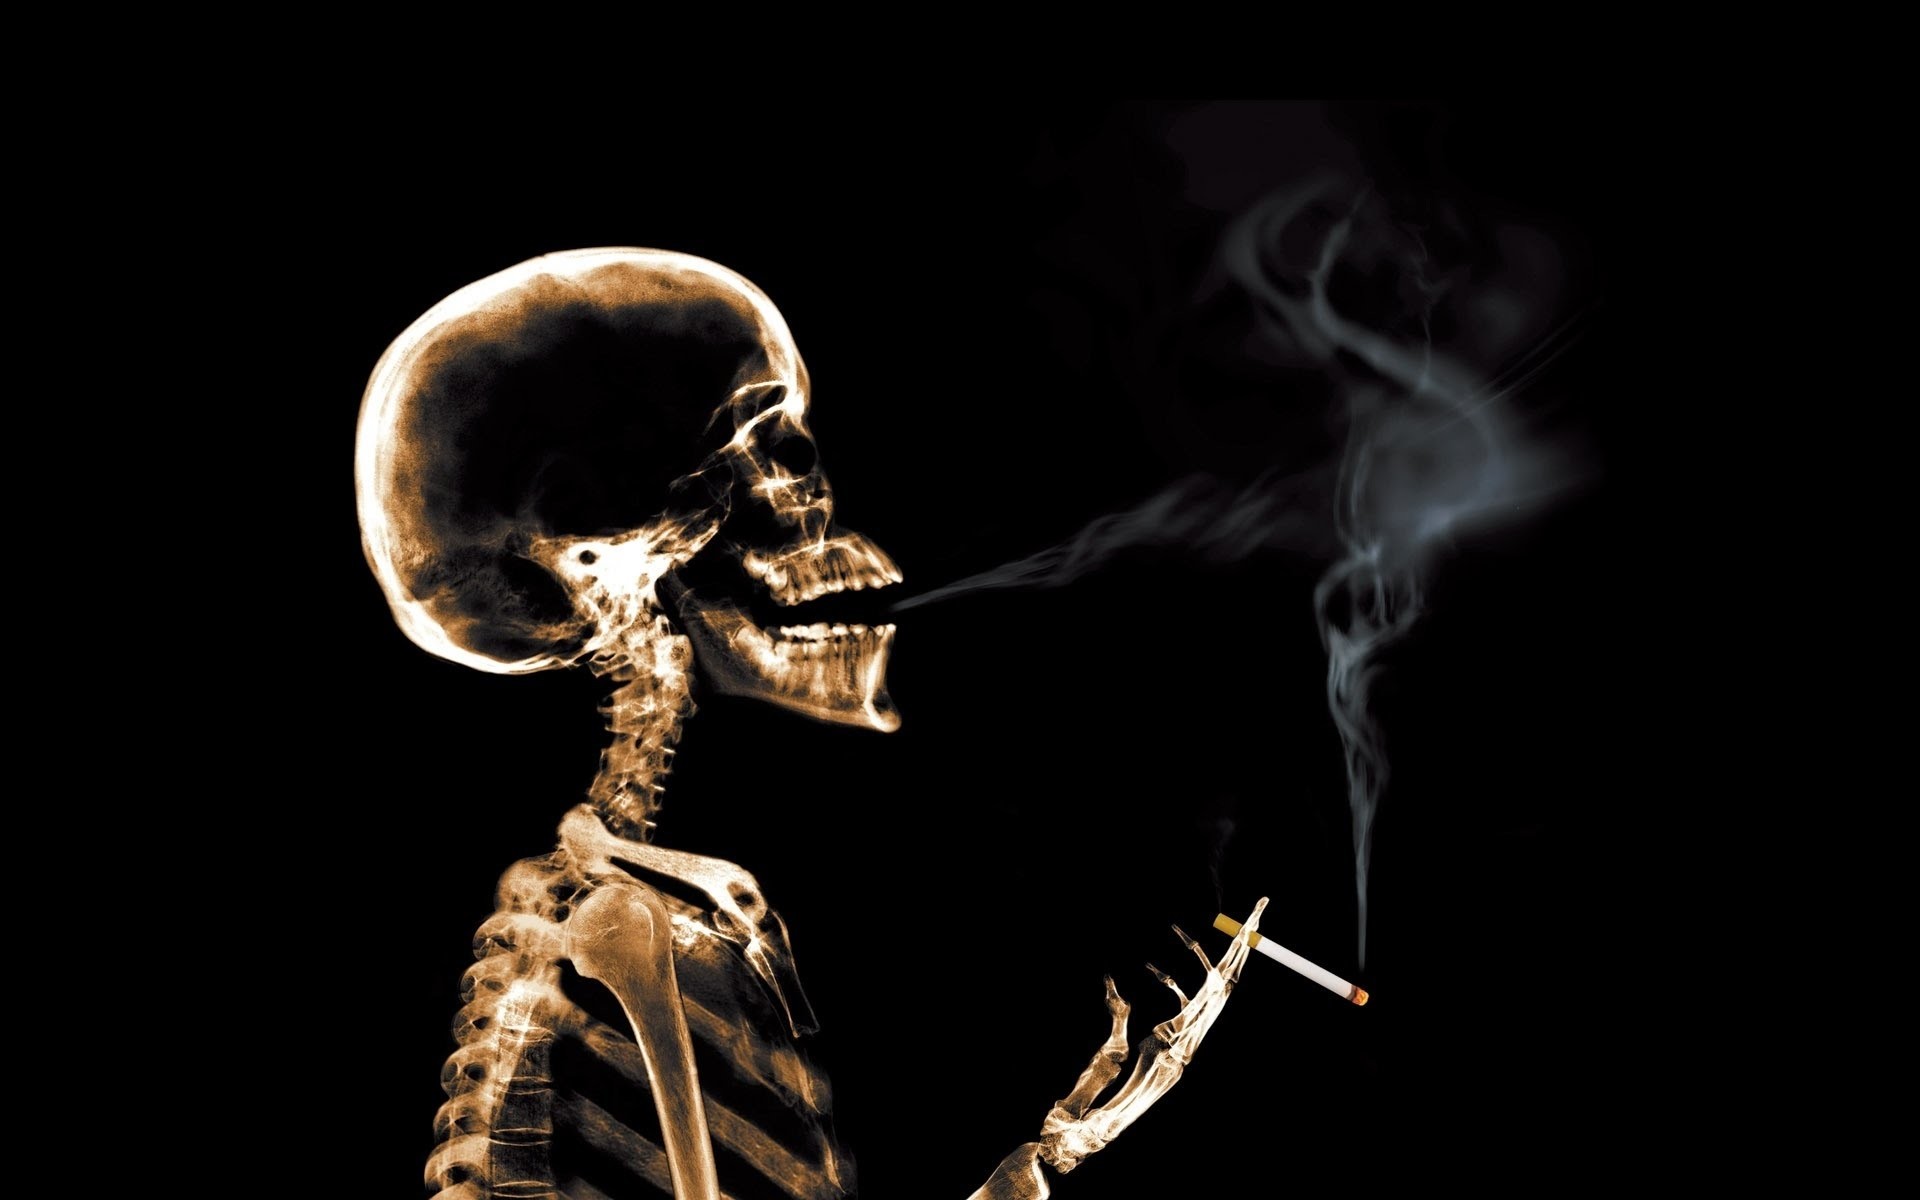 rauchen wallpaper herunterladen,skelett,mensch,rauch,menschlicher körper,fotografie